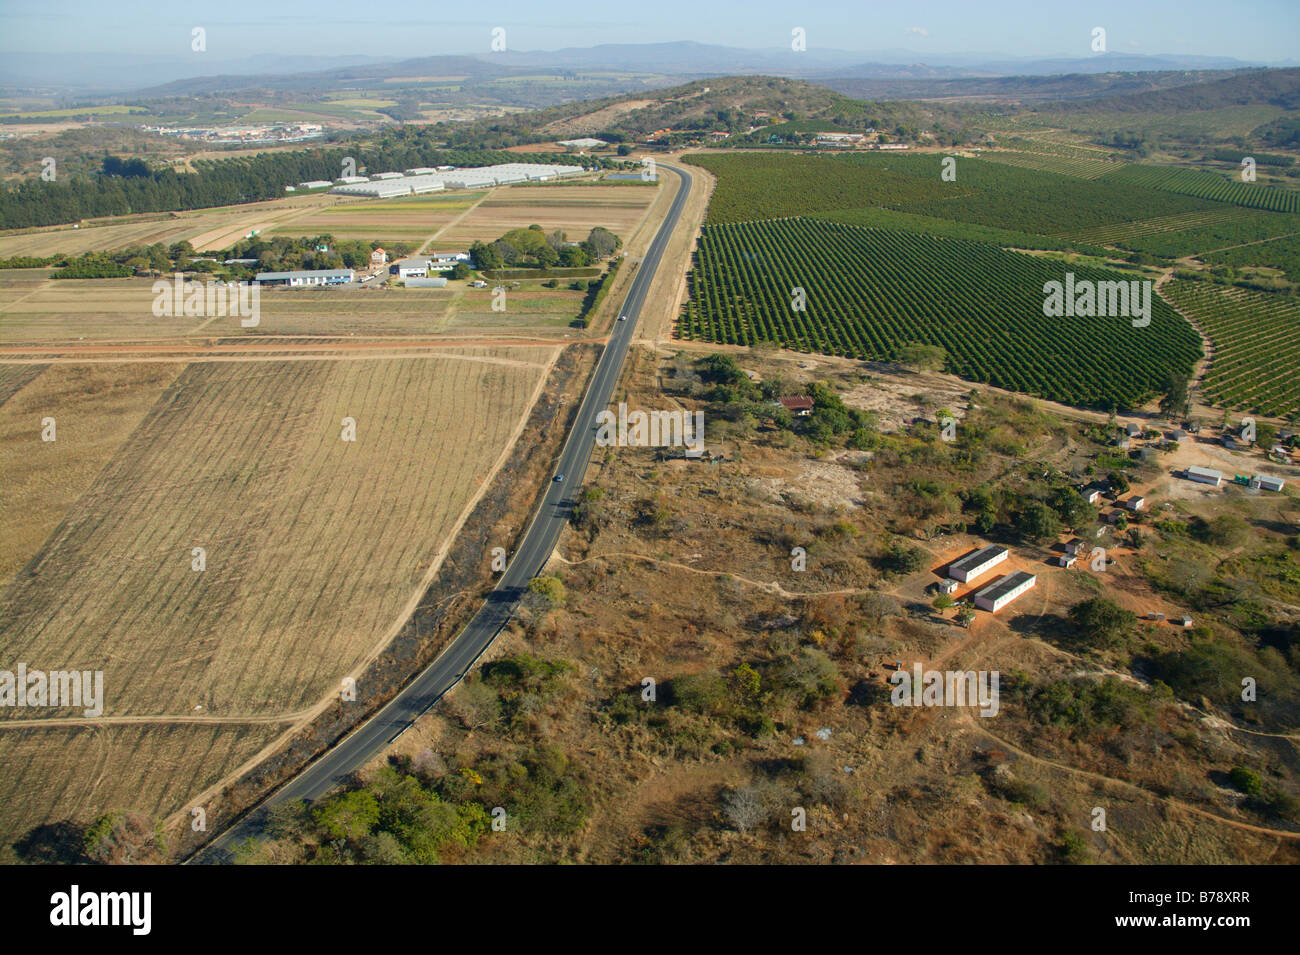 Vista aérea de la Lowveld campo mostrando los huertos de cítricos y barbechos Foto de stock